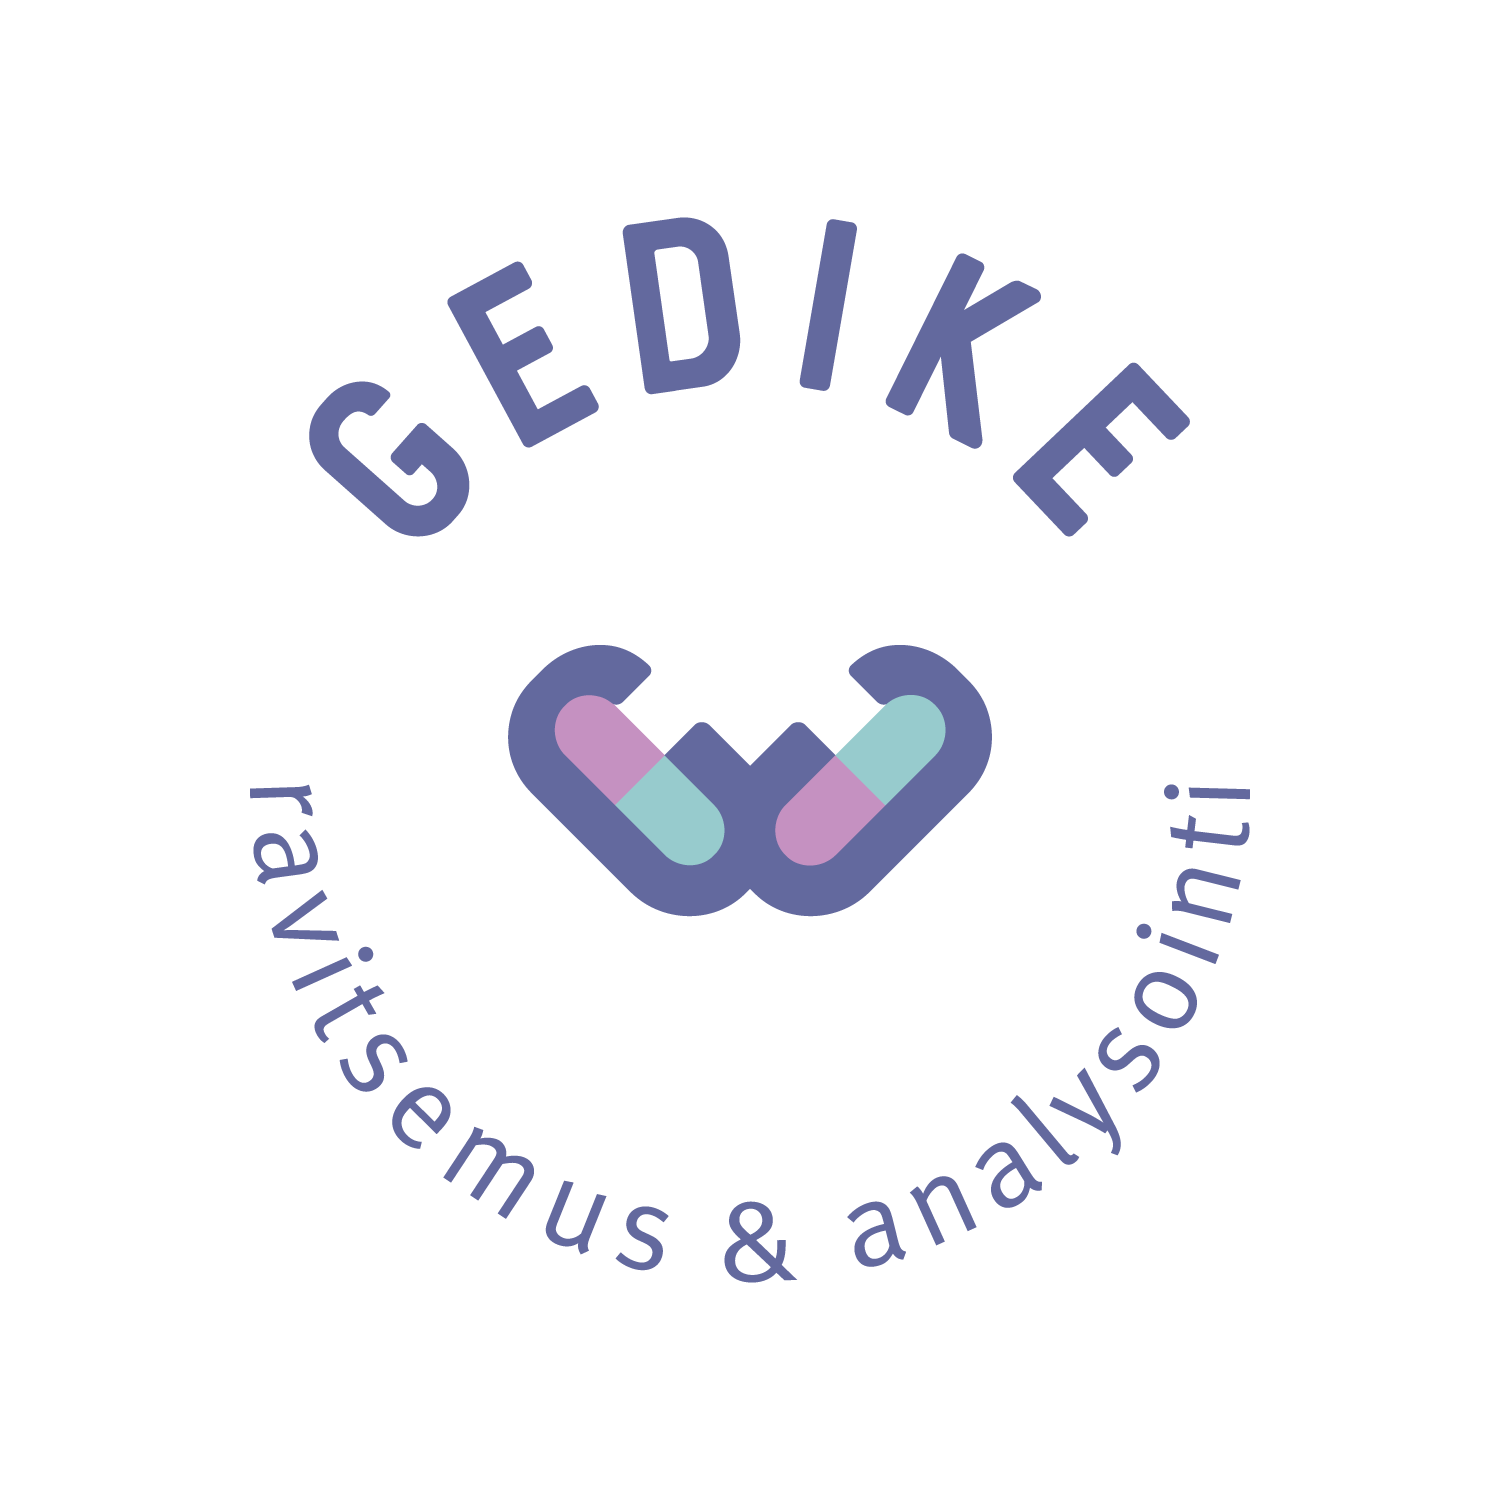 Gedike.fi